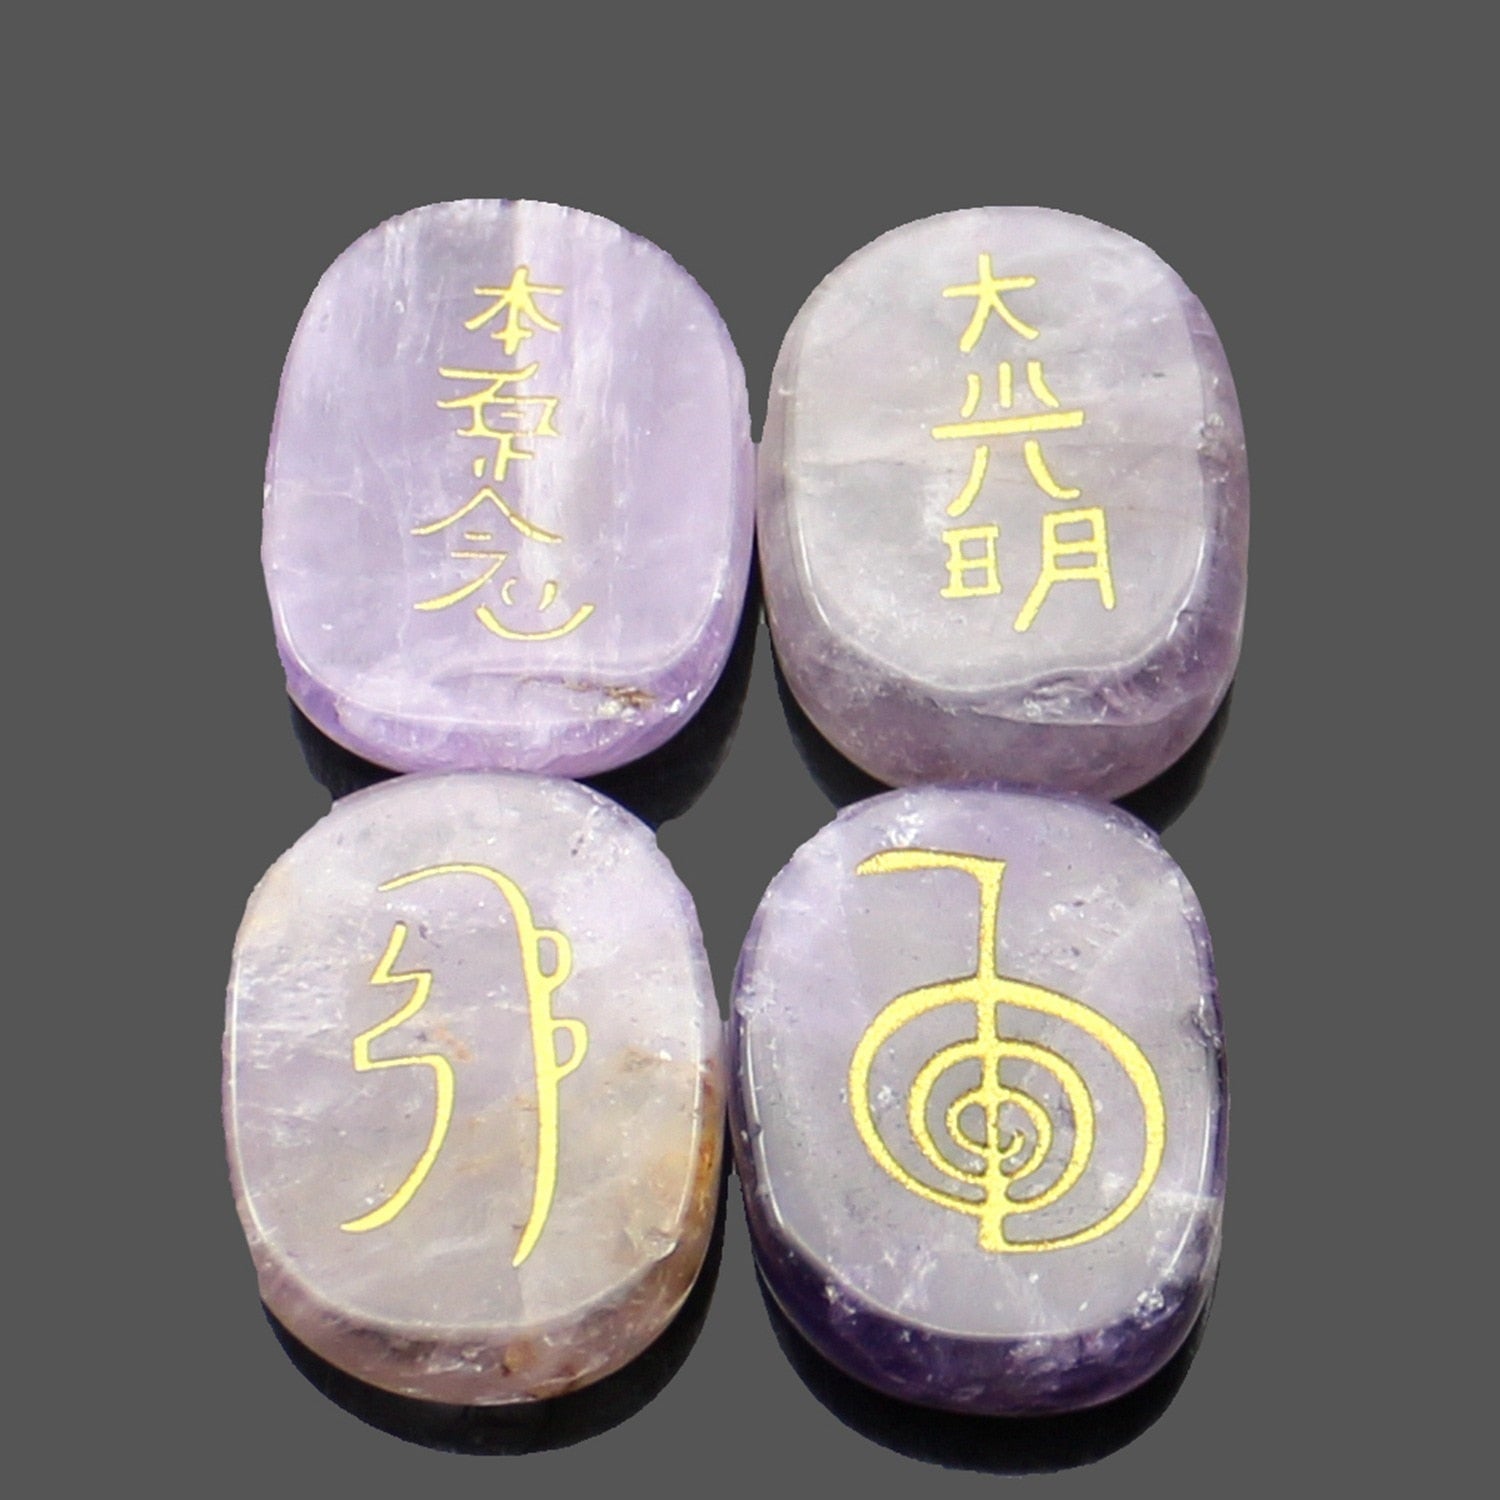 four reiki symbol engraved stones chokurei seihiki honshazeshonen daikomyo  (power, emotion, distance, higher level or master) amethyst